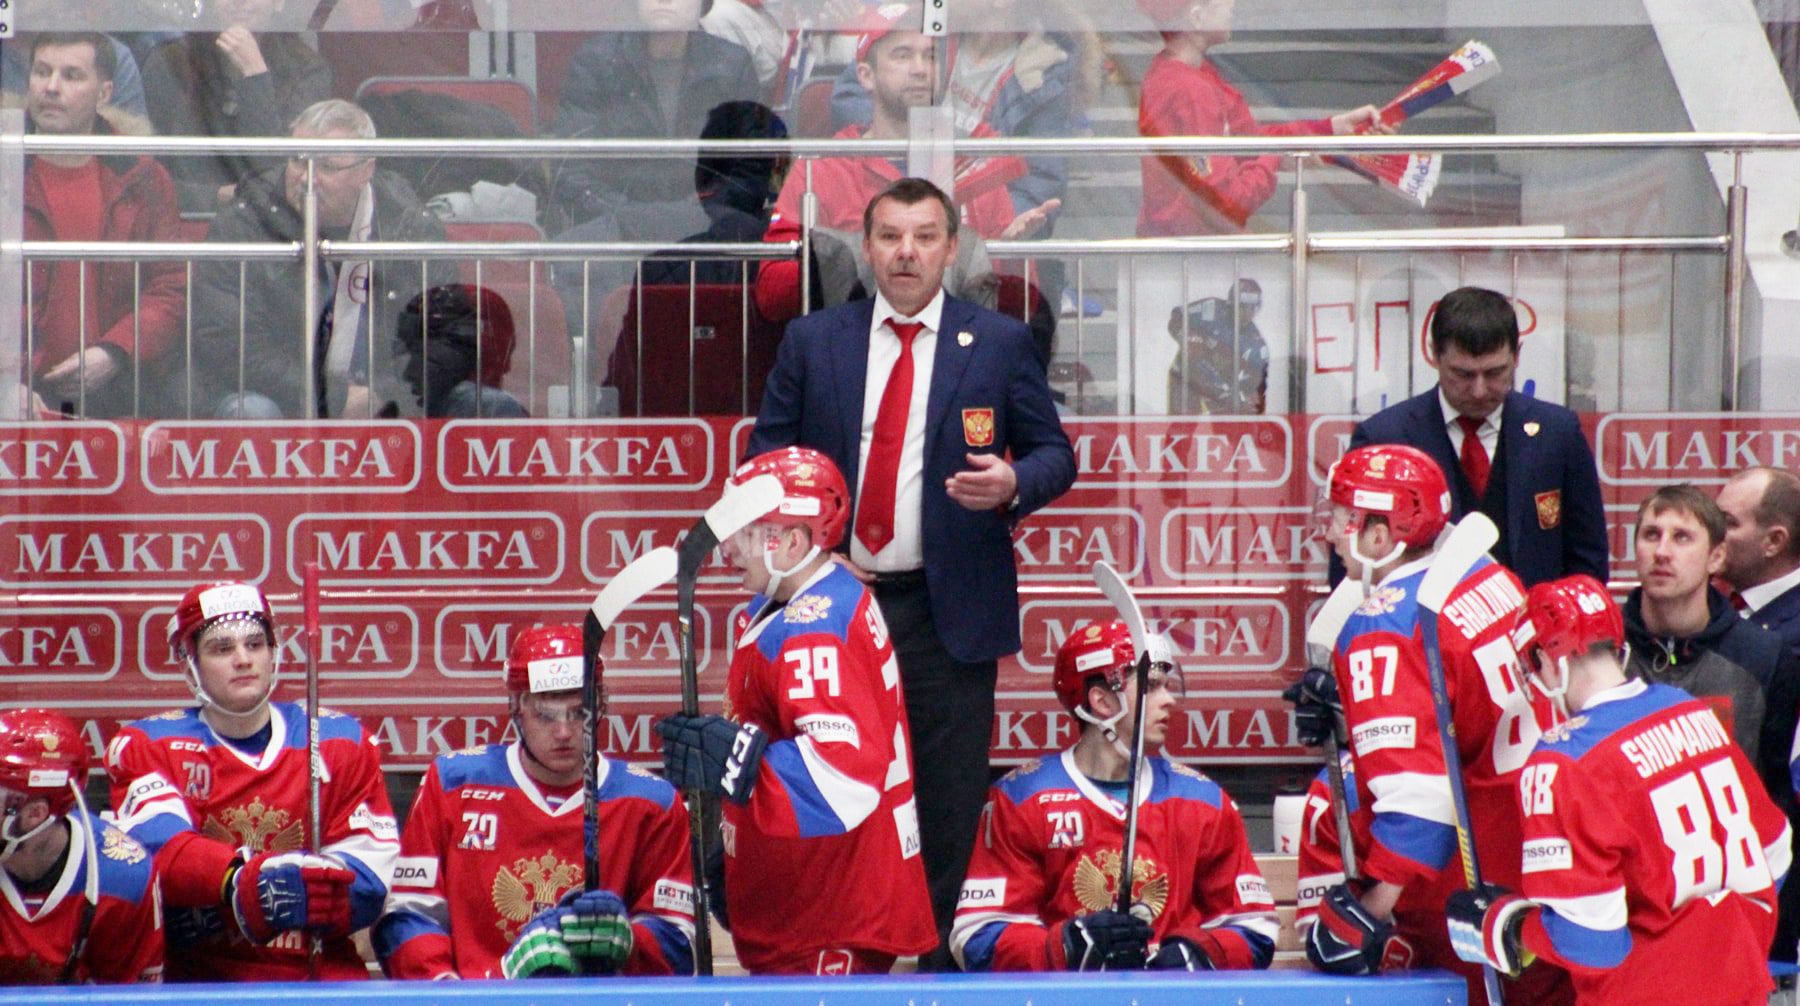 Dailystorm - Федерация Чехии по хоккею поддержала российскую сборную в противостоянии с МОК